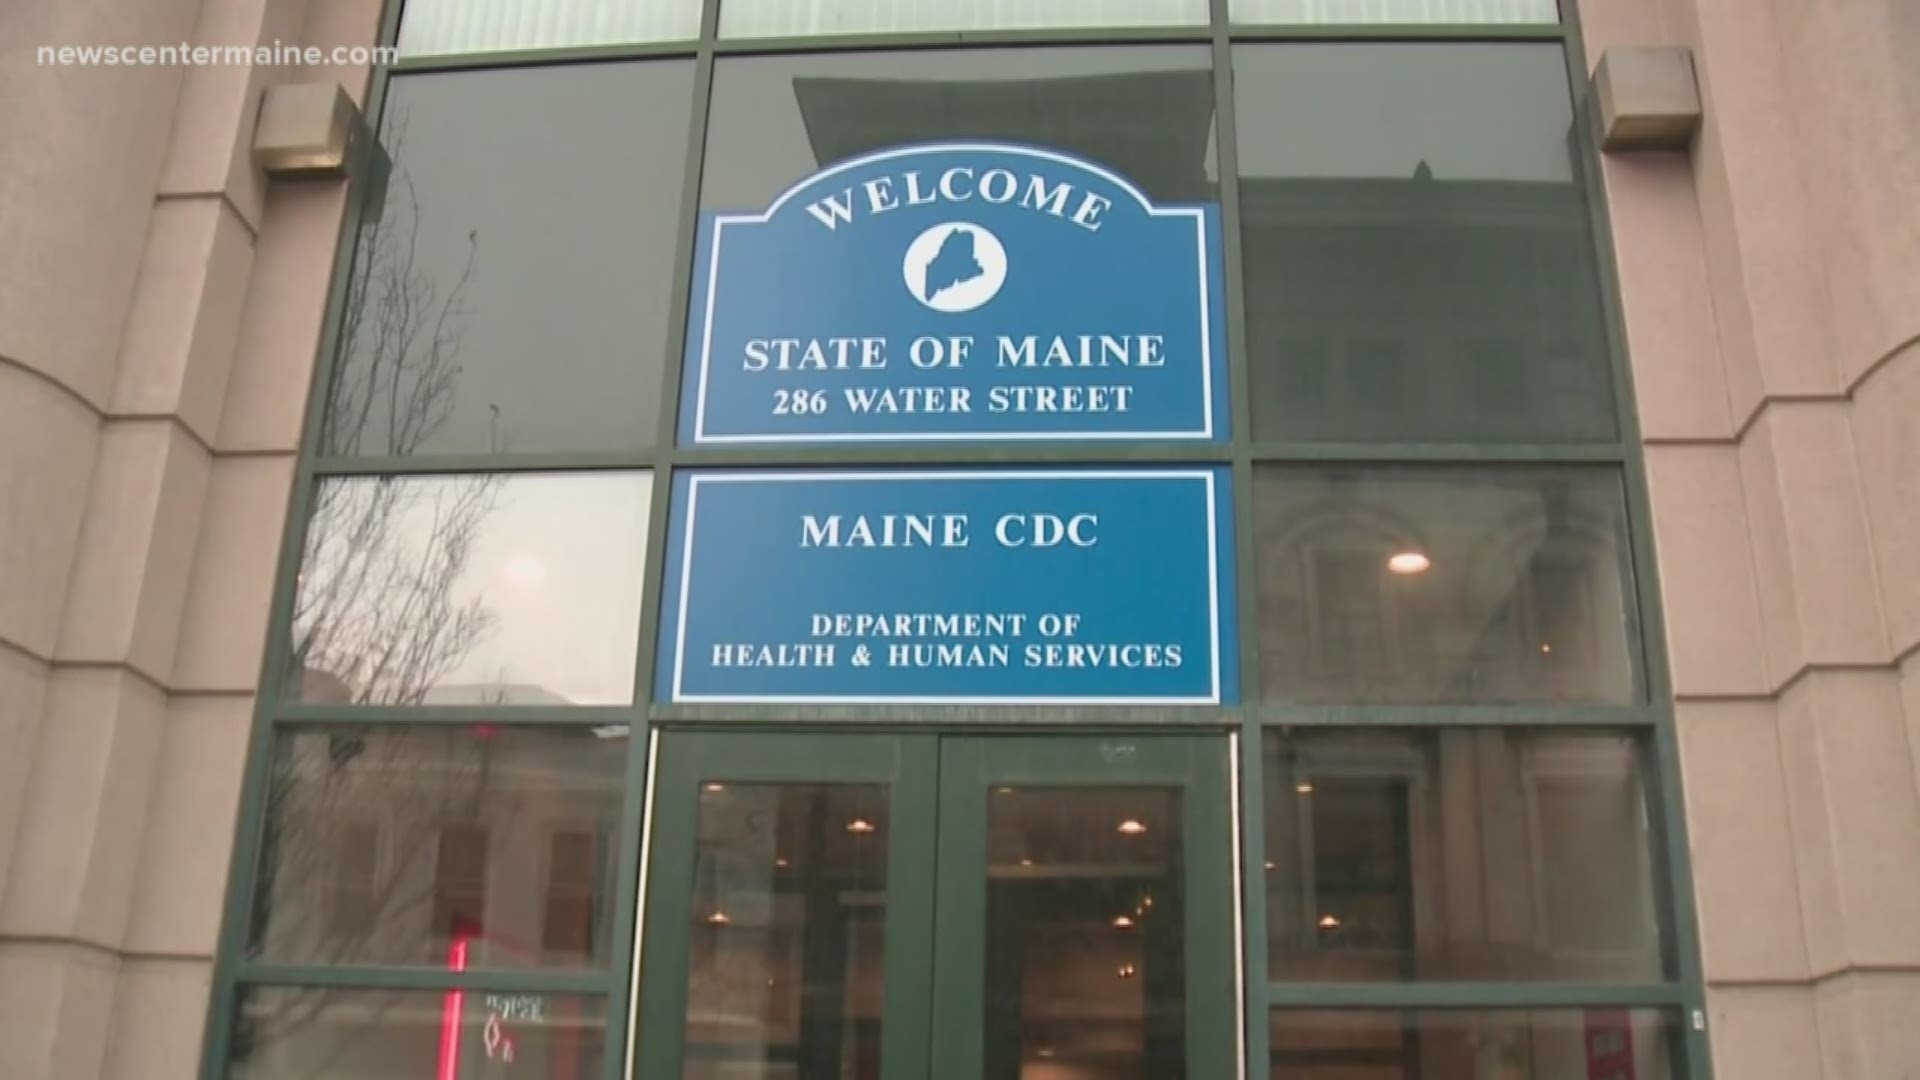 Maine CDC update March 26, 2020